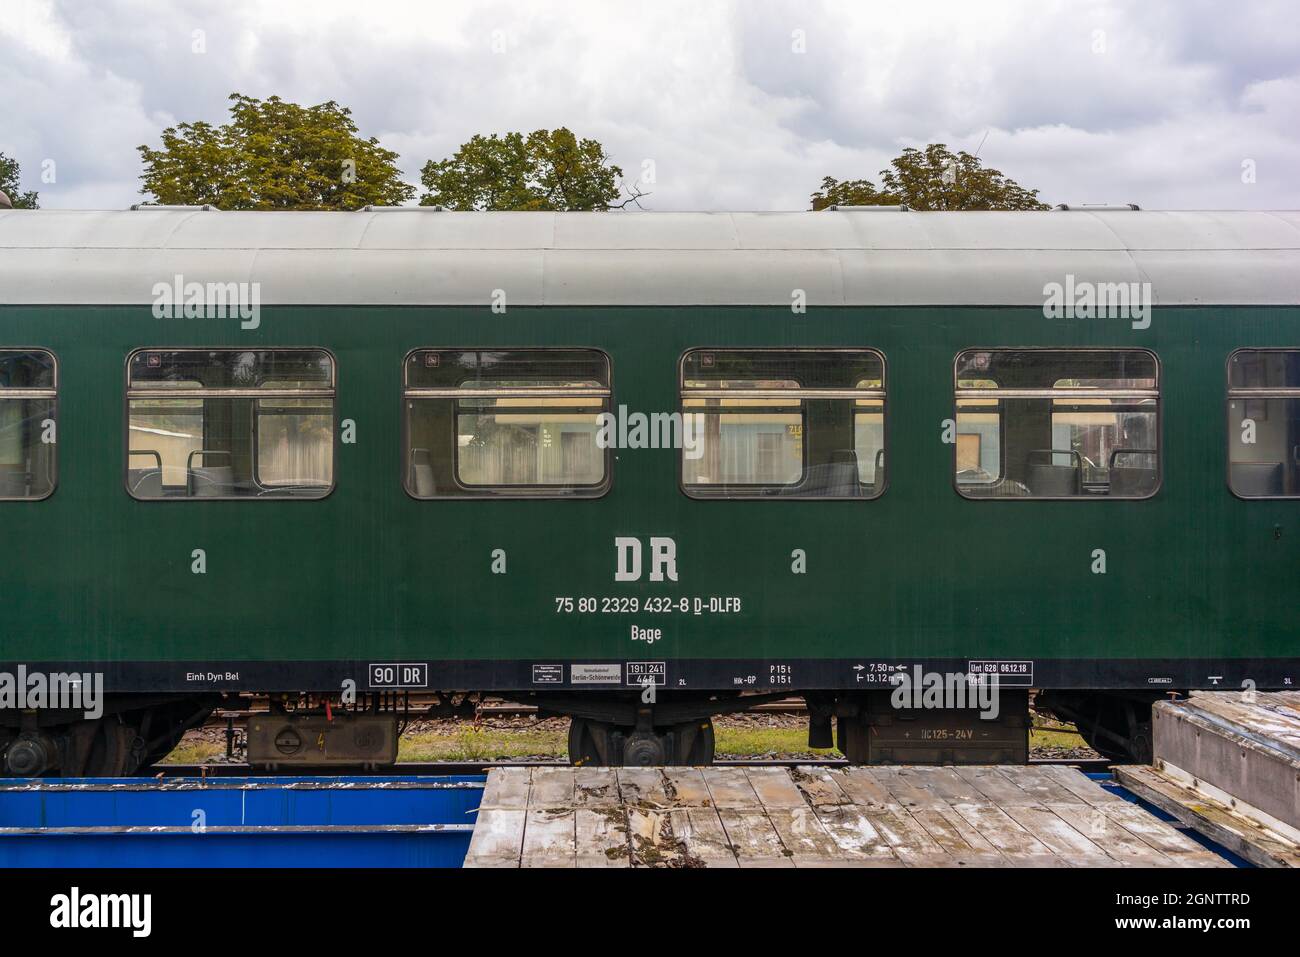 Storica ferrovia d'epoca Deutsche Reichsbahn (DR) comparto ferroviario tedesco (Wagen 30) costruito nel 1960, Berlino, Germania, Europa Foto Stock